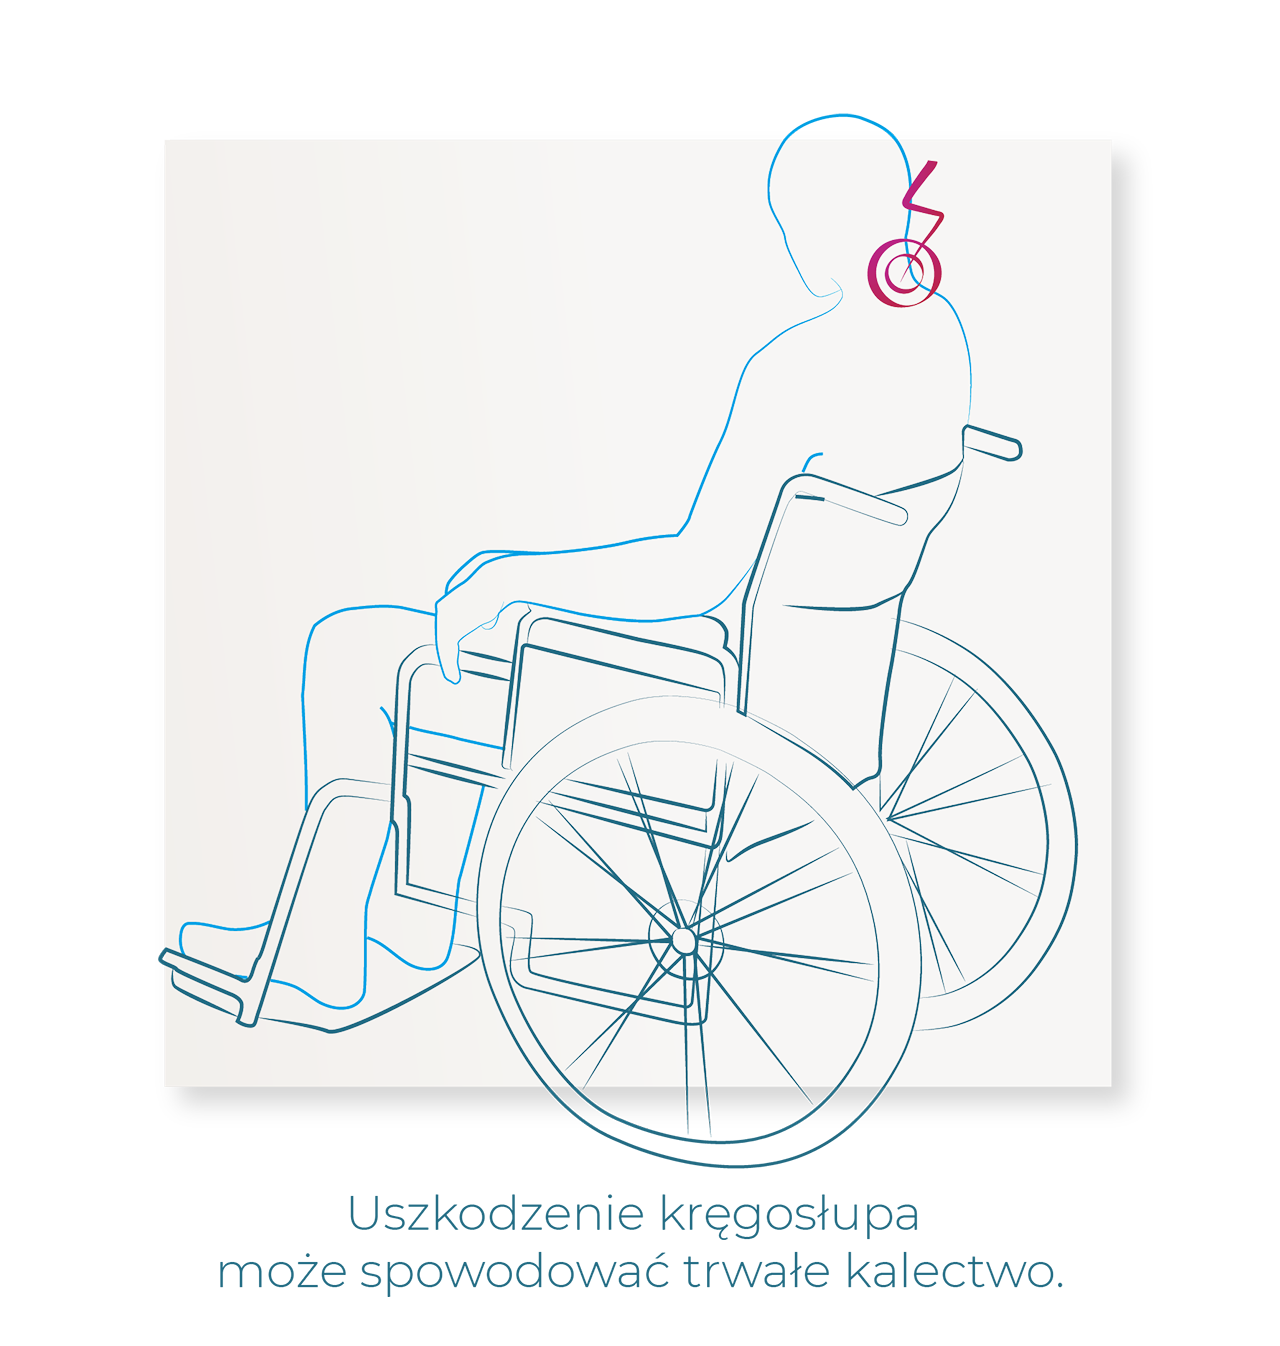 Uszkodzenie kręgosłupa, ból kręgosłupa, uraz kręgosłupa, wózek inwalidzki, sen przy niepełnosprawności, sen z niepełnosprawnością